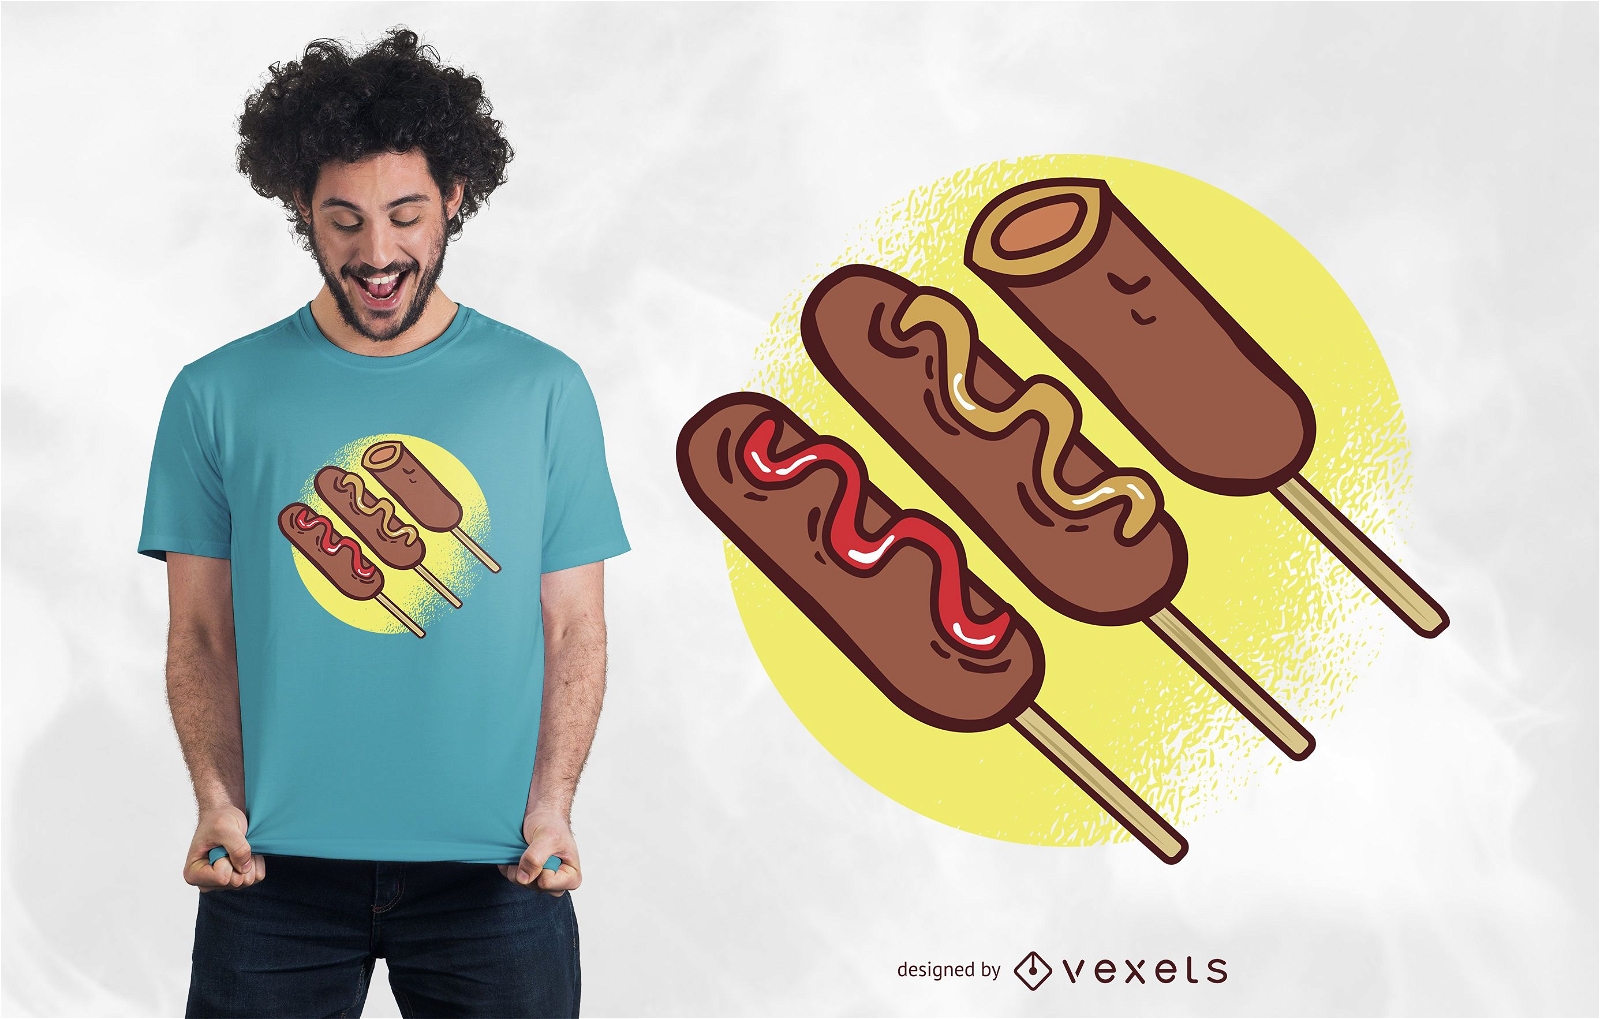 Diseño de camiseta Corn Dogs